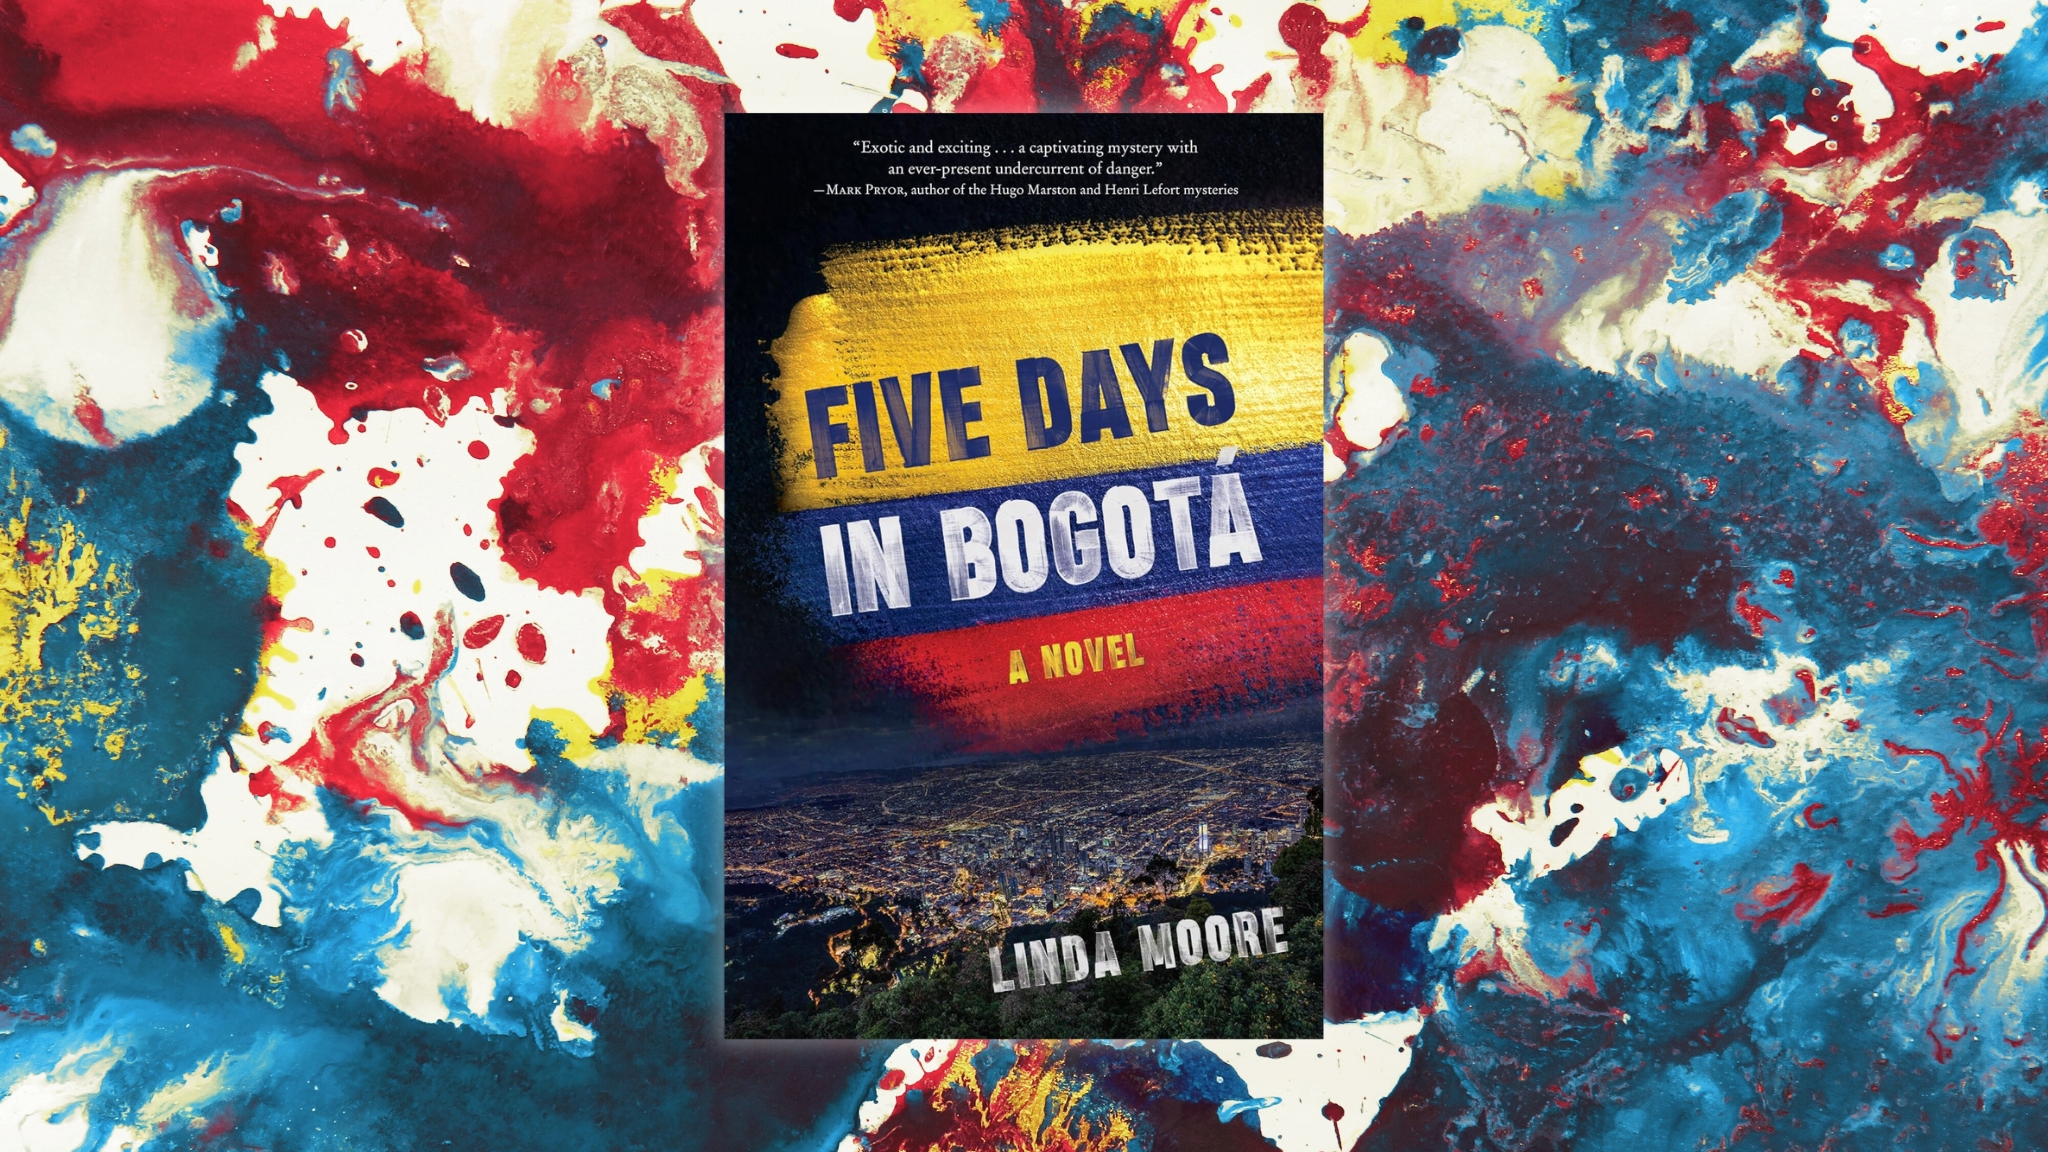 Five Days in Bogota by Linda Moore